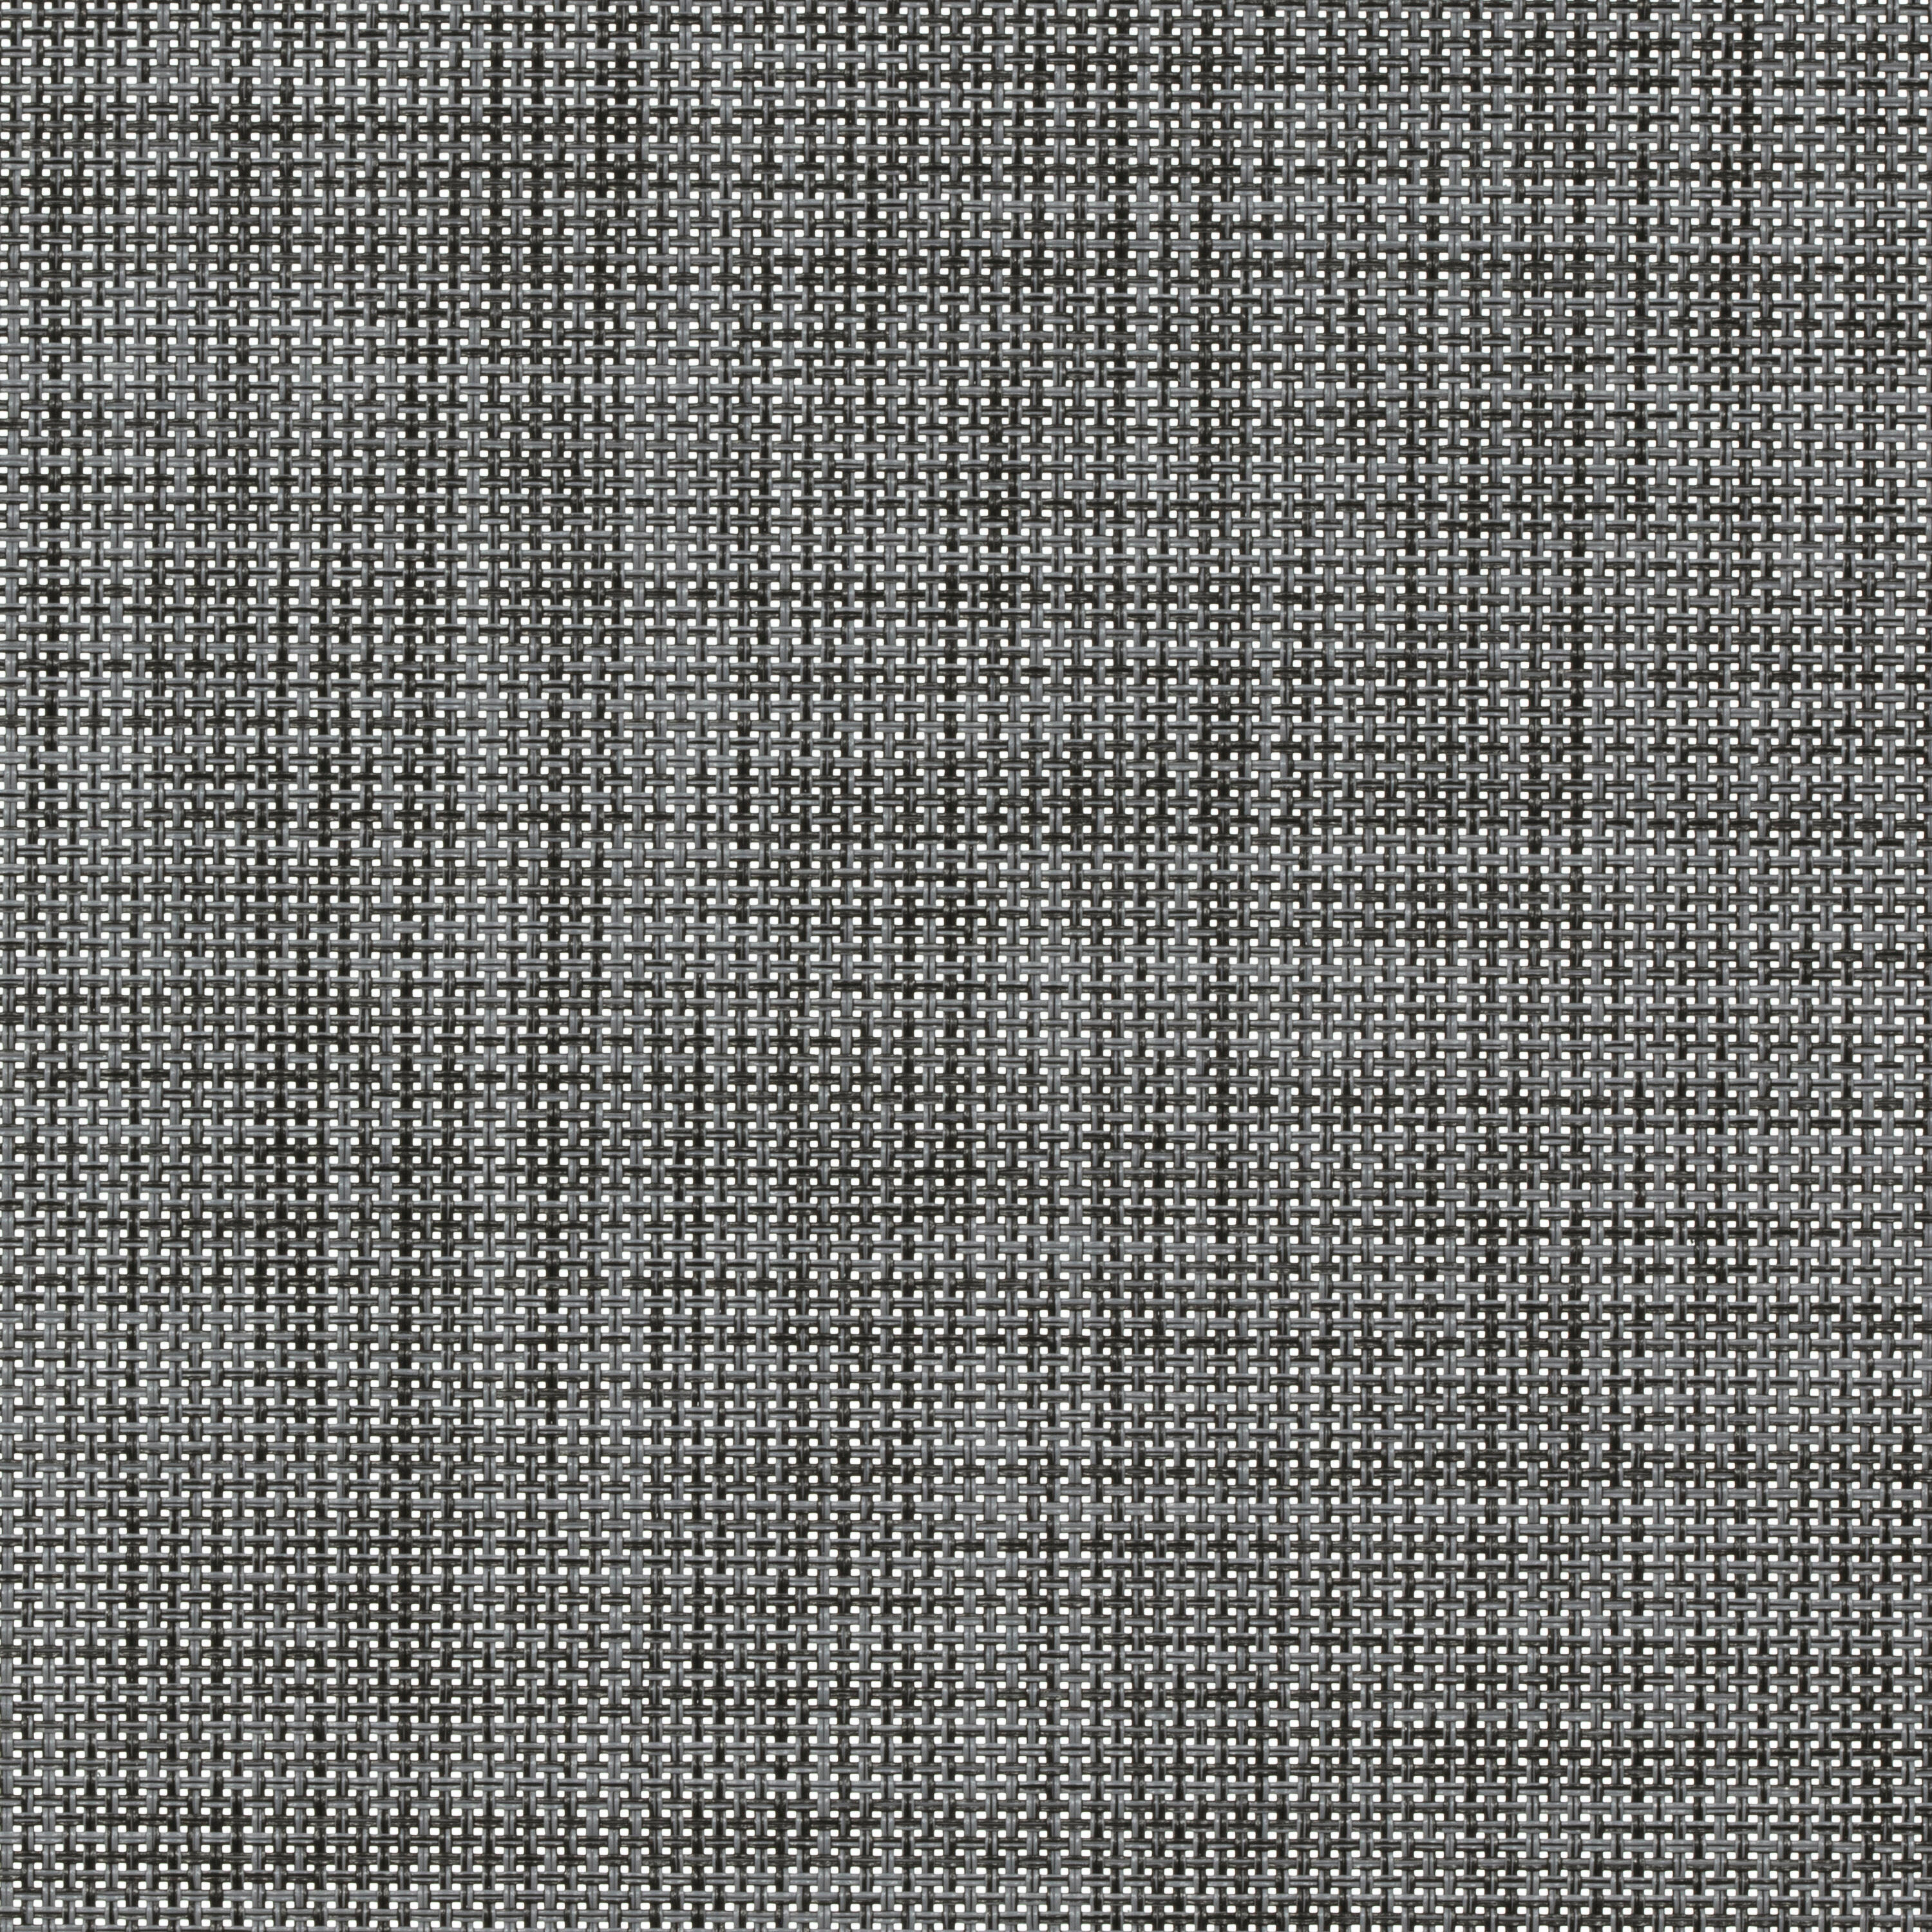 Tessuto per tende a rullo filtrante INSPIRE Puebla grigio / argento 70.8 x 250 cm - 3